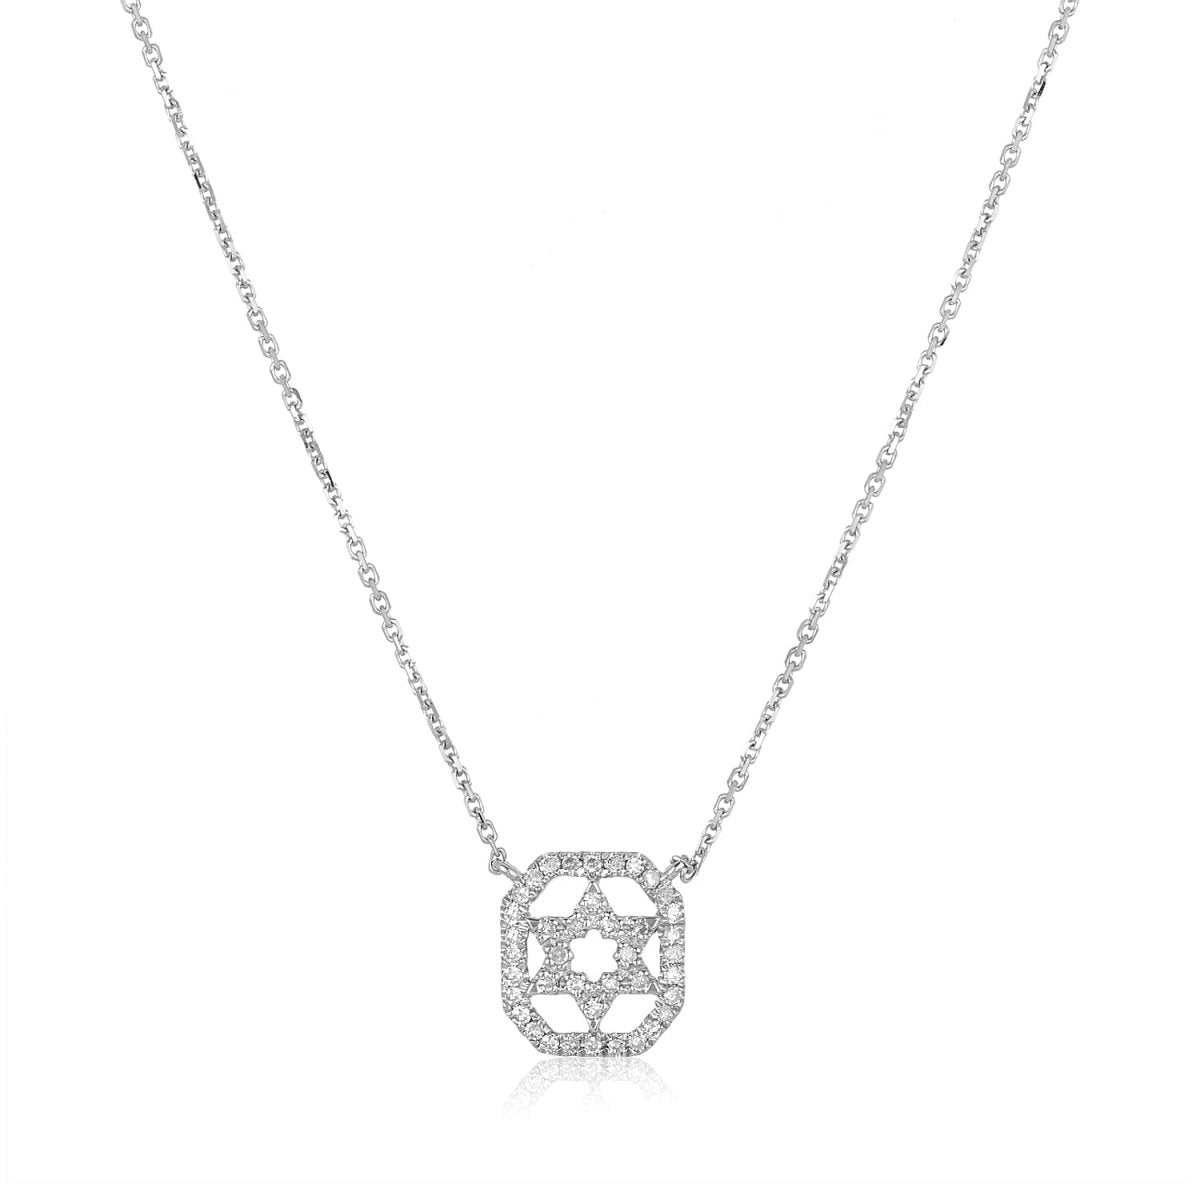 Pave Diamond Judaic Star Necklace